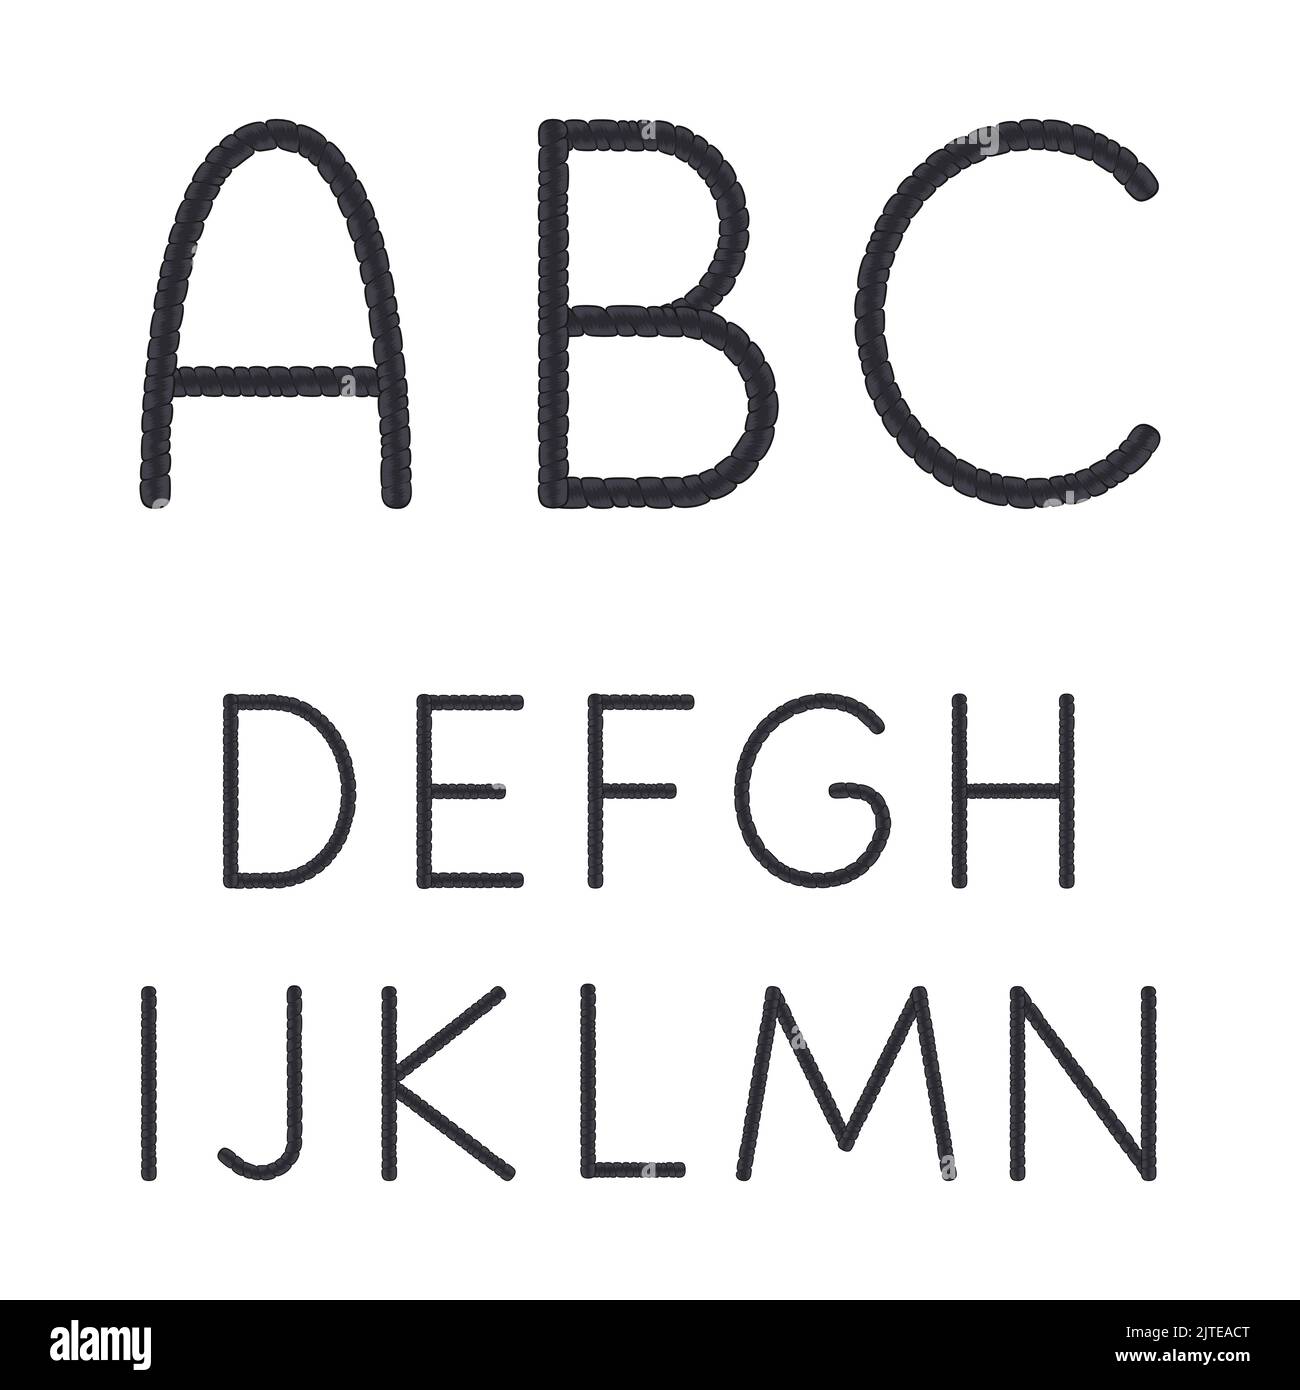 Schrift, Alphabet, Buchstaben von Dreadlocks von A bis N. isolierte Vektorobjekte auf weißem Hintergrund. Stock Vektor